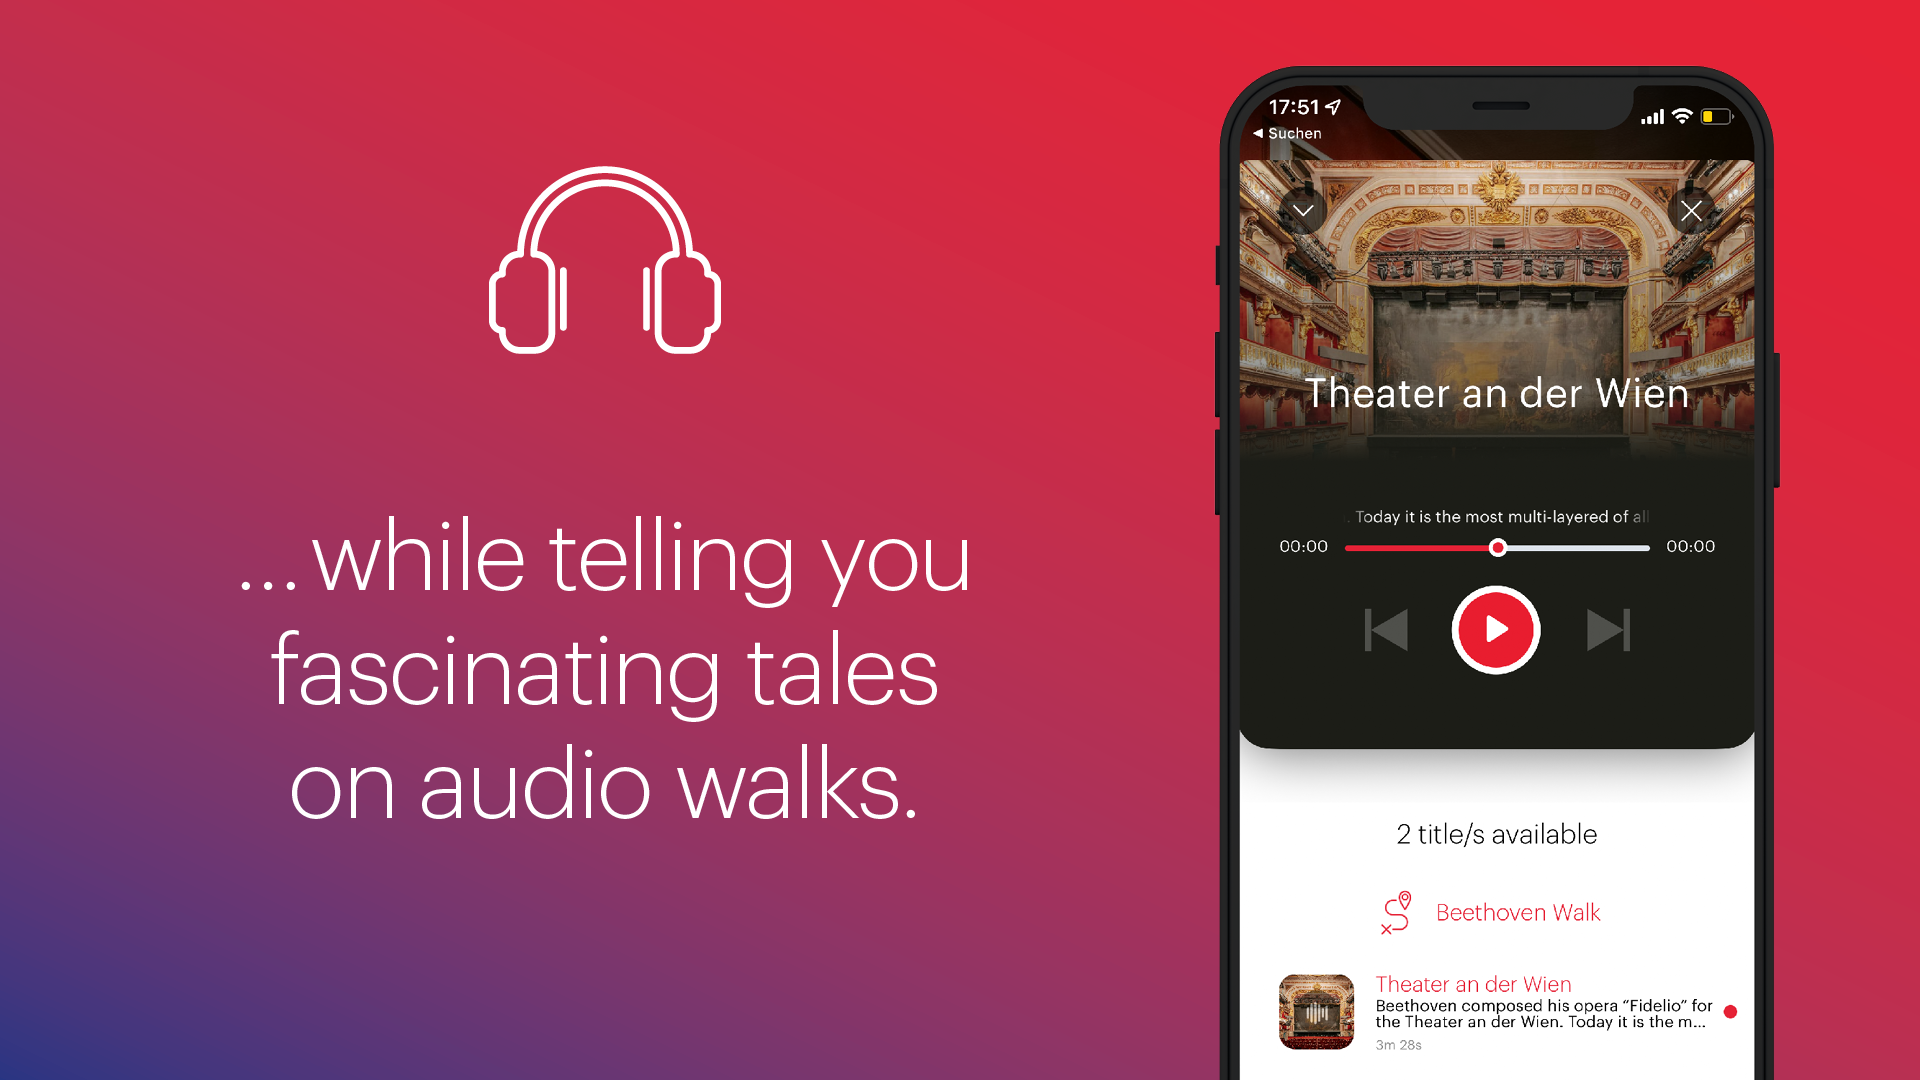 ivie City Guide App – Audiowalks